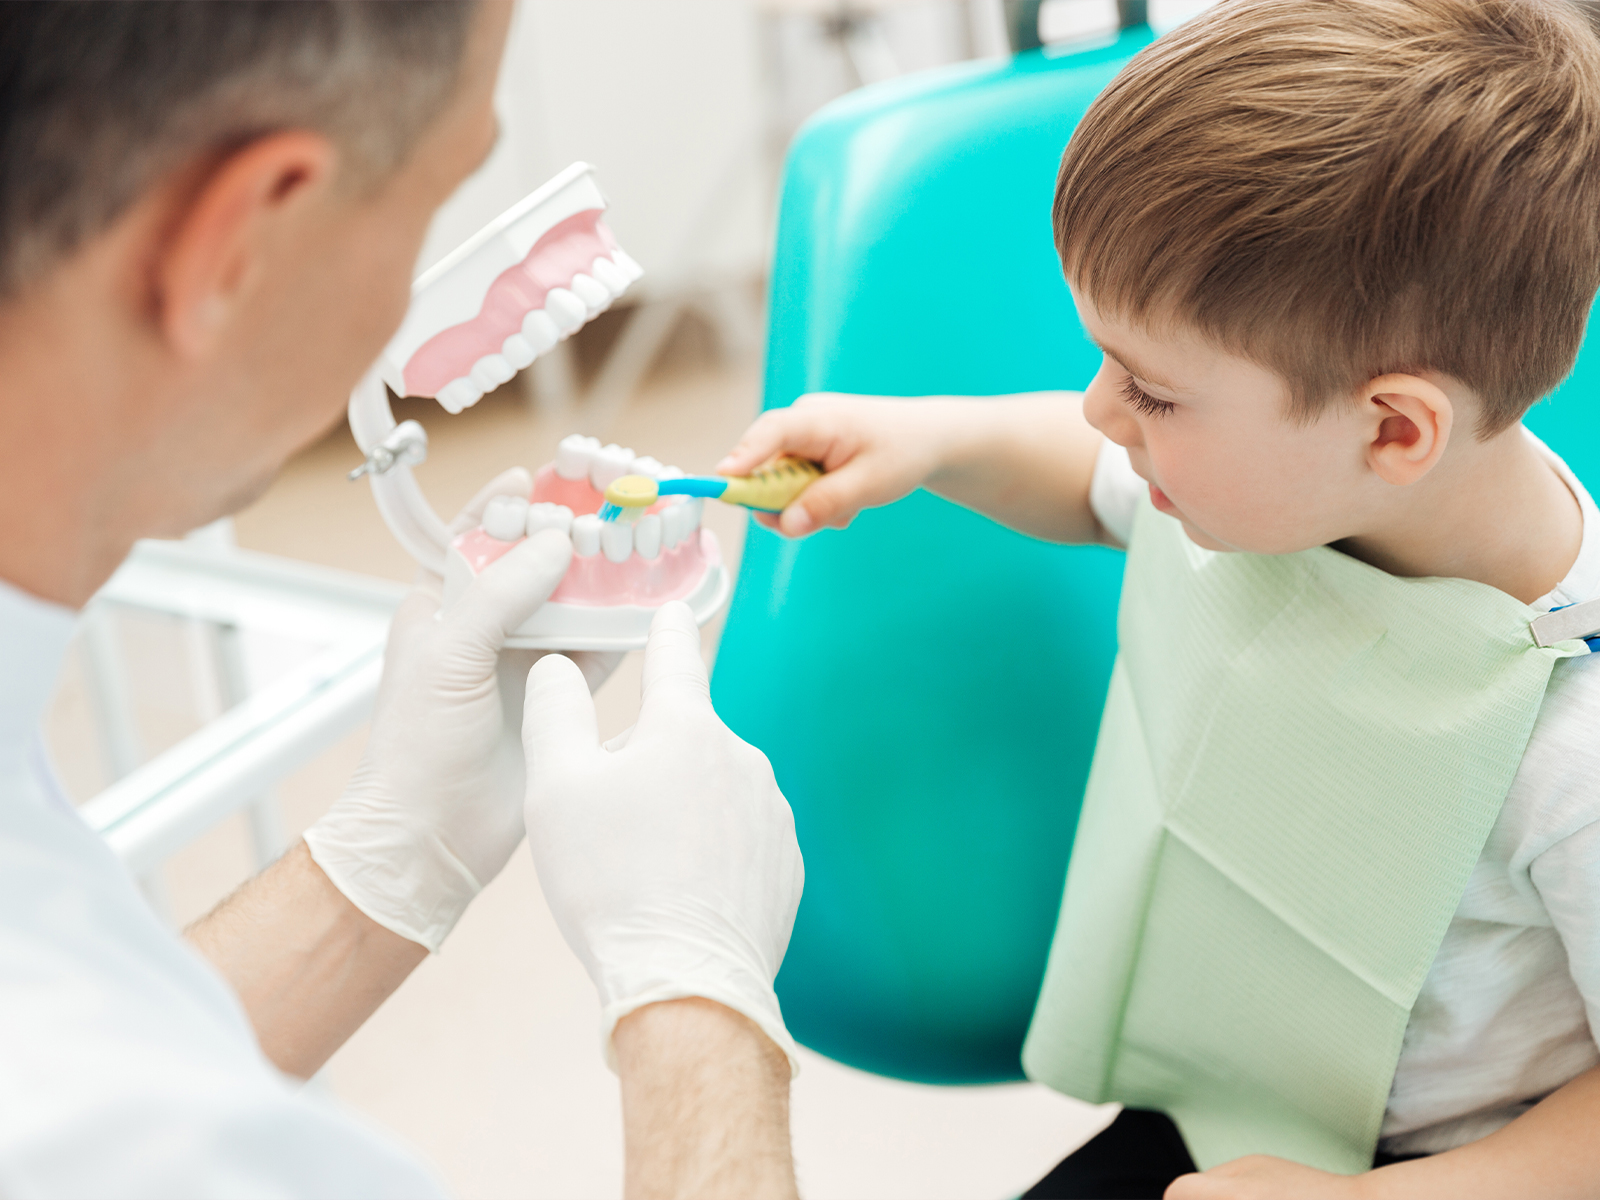 Es importante hacer un seguimiento rutinario de la salud dental de los niños, por lo que recomendamos una visita regular al dentista.